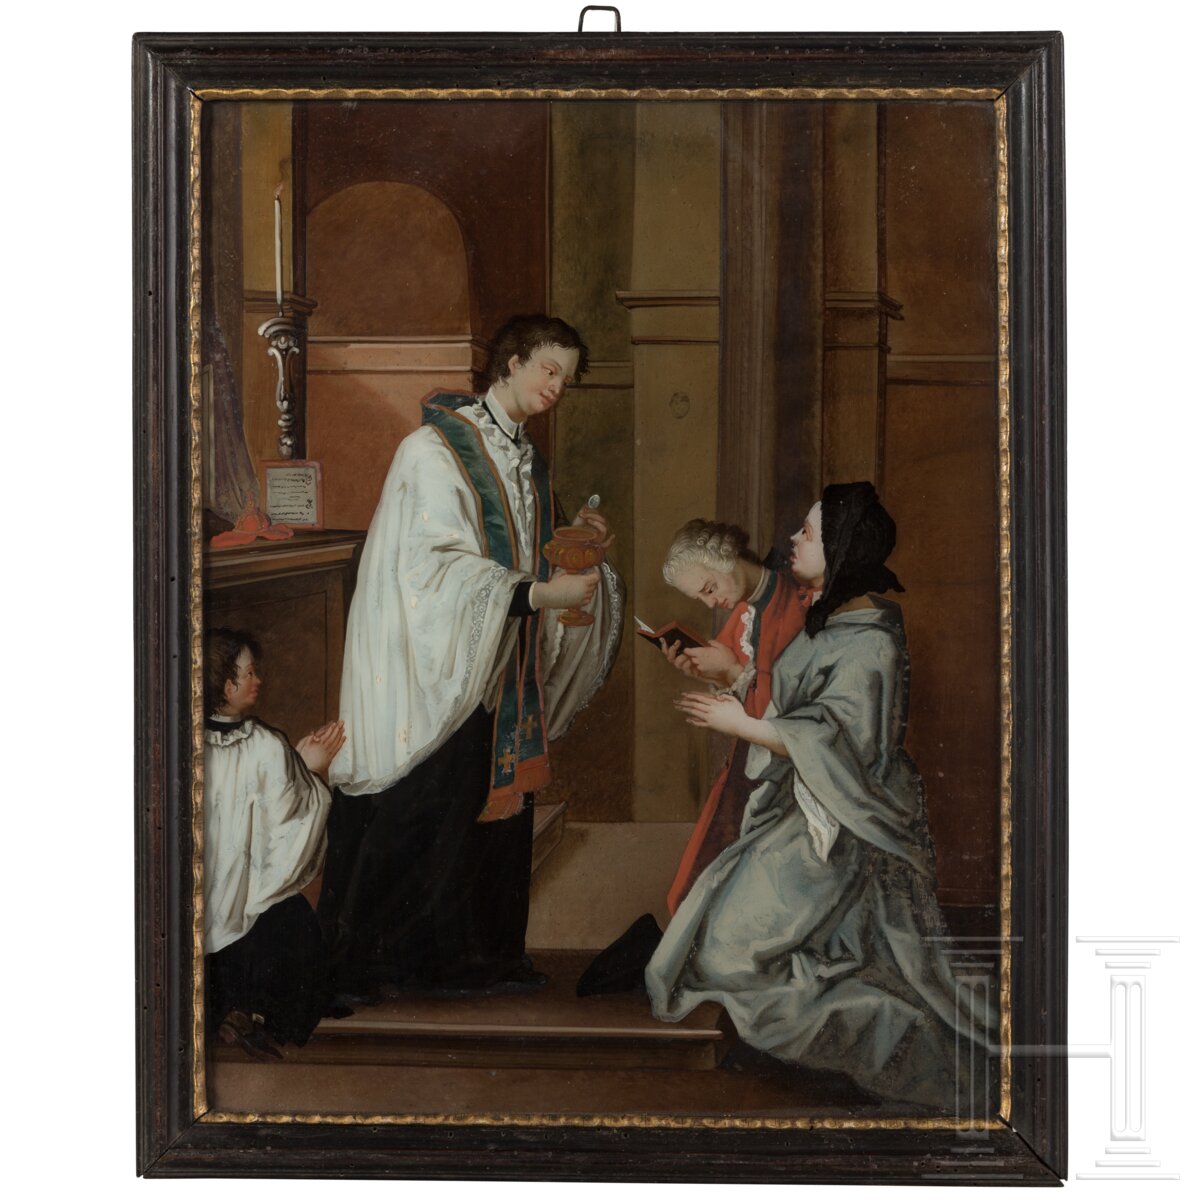 Sechs Hinterglasbilder mit sechs Sakramenten, Augsburg oder Murnau, 18. Jhdt.  - Bild 18 aus 19